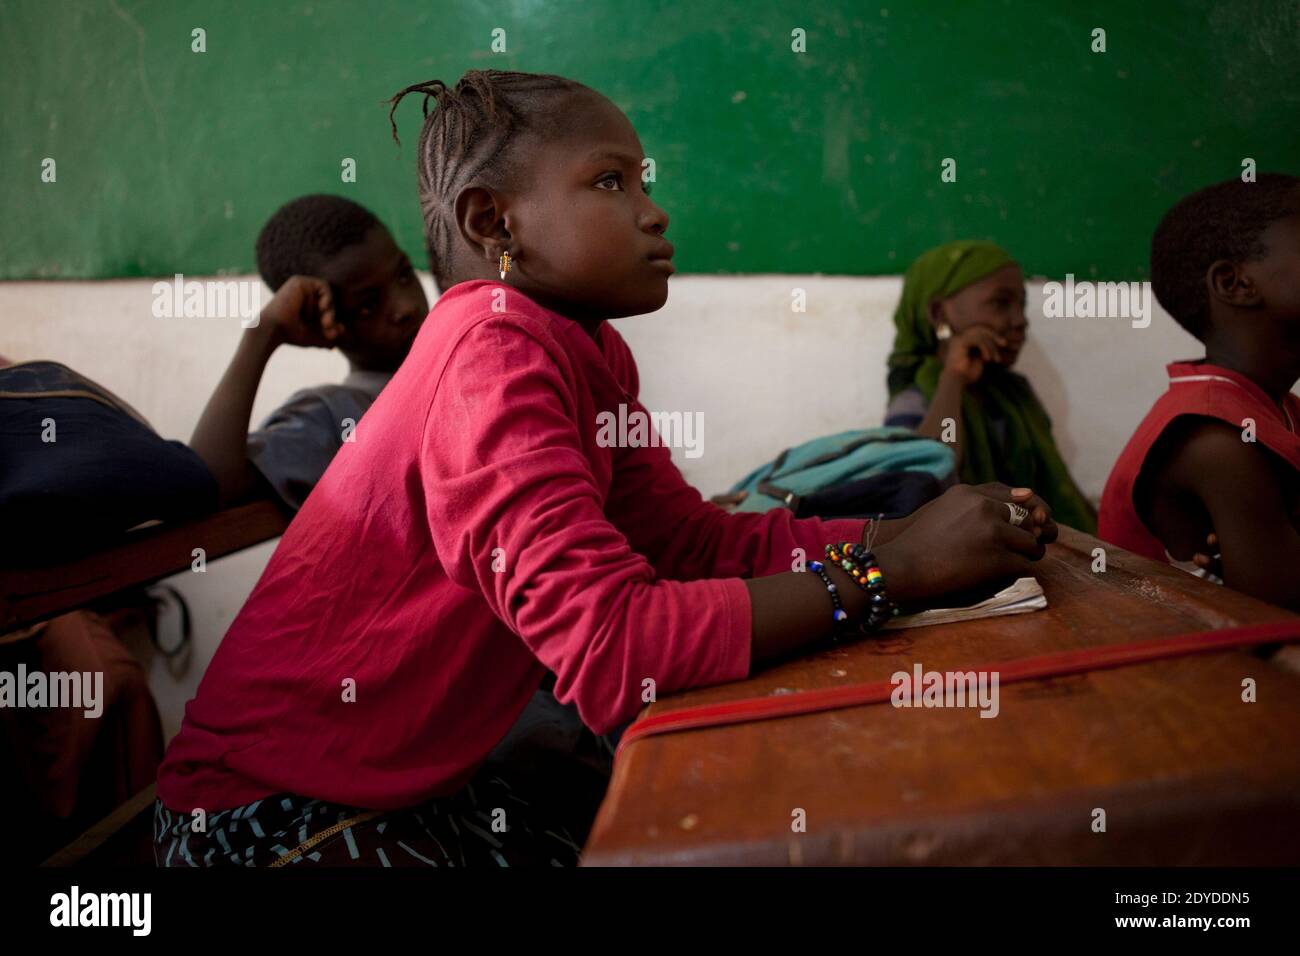 FATA, 10 in der Schule, in Bamako, Mali am 1. Februar 2013. FATA floh im April 2012 mit ihrer Mutter Fatima aus Timbuktu. Nach Angaben von Amnesty International sind 250,000 Menschen aus Mali geflohen, als islamische Kämpfer mit Verbindungen zu Al-Qaida den nördlichen Teil des Landes unter Kontrolle nahmen. Foto von Julien Tack/ABACAPRESS.COM Stockfoto